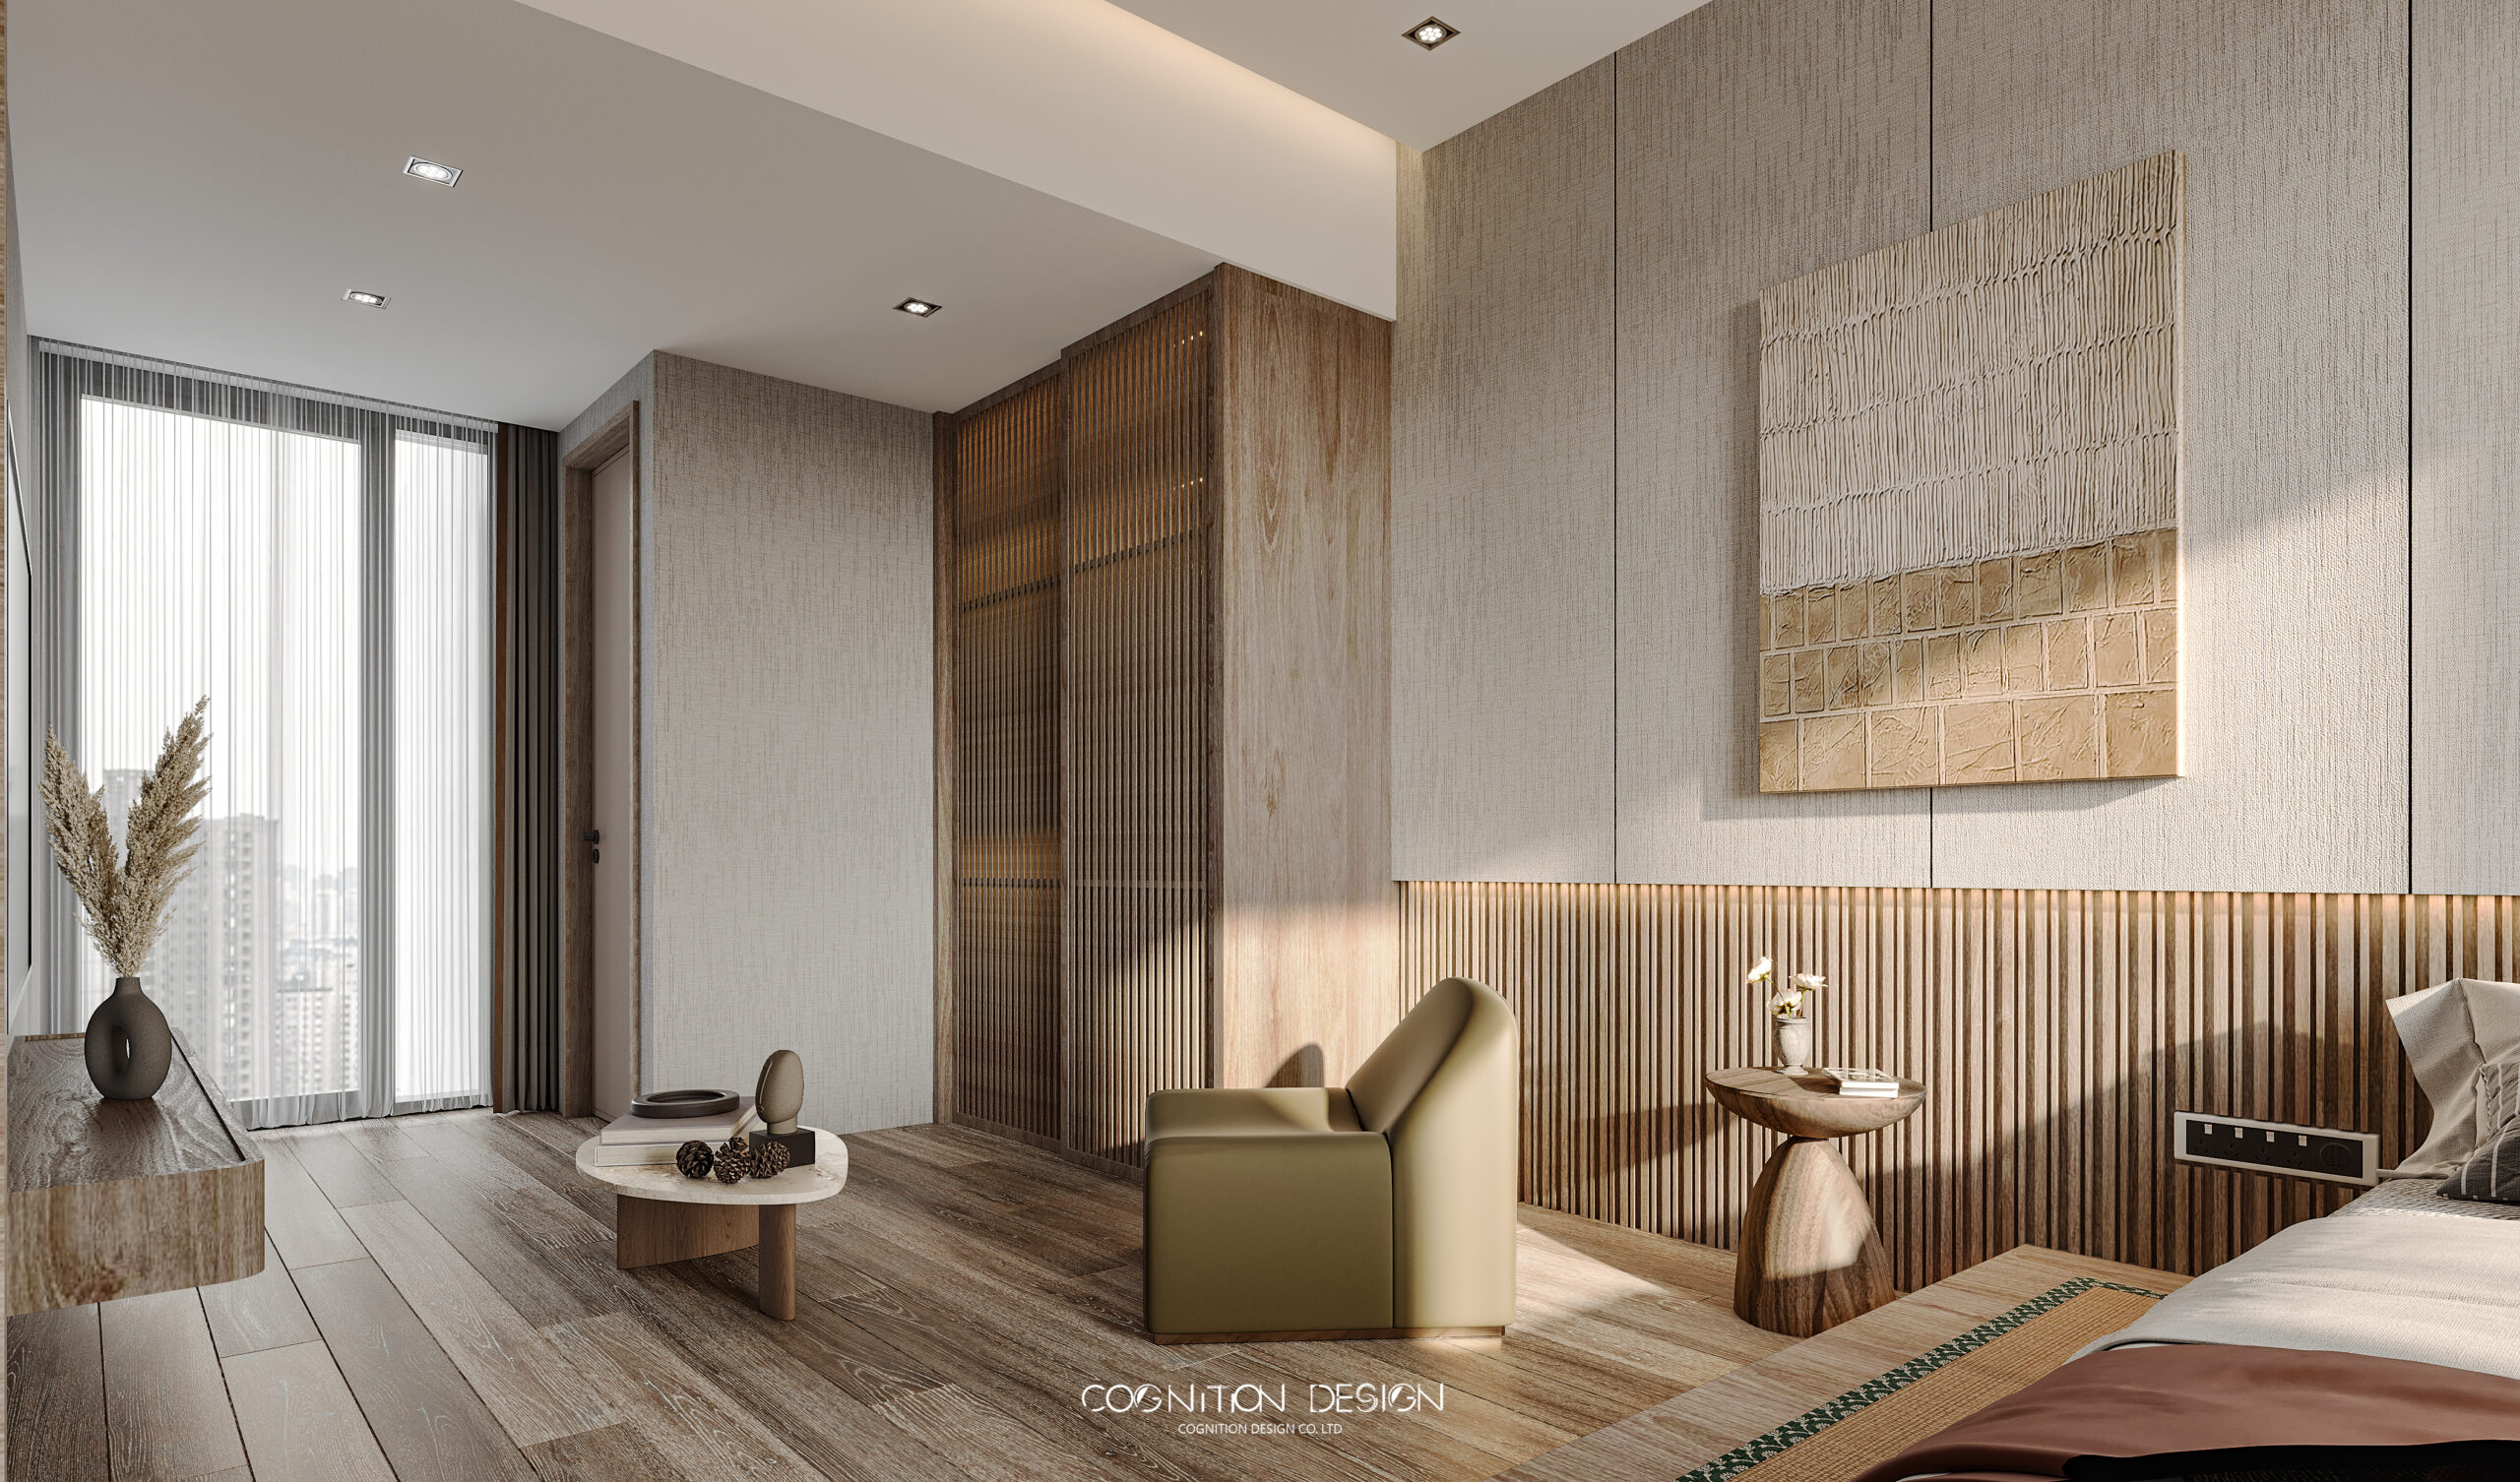 臥室空間設計搭配上有質感的木地板讓人更加放鬆